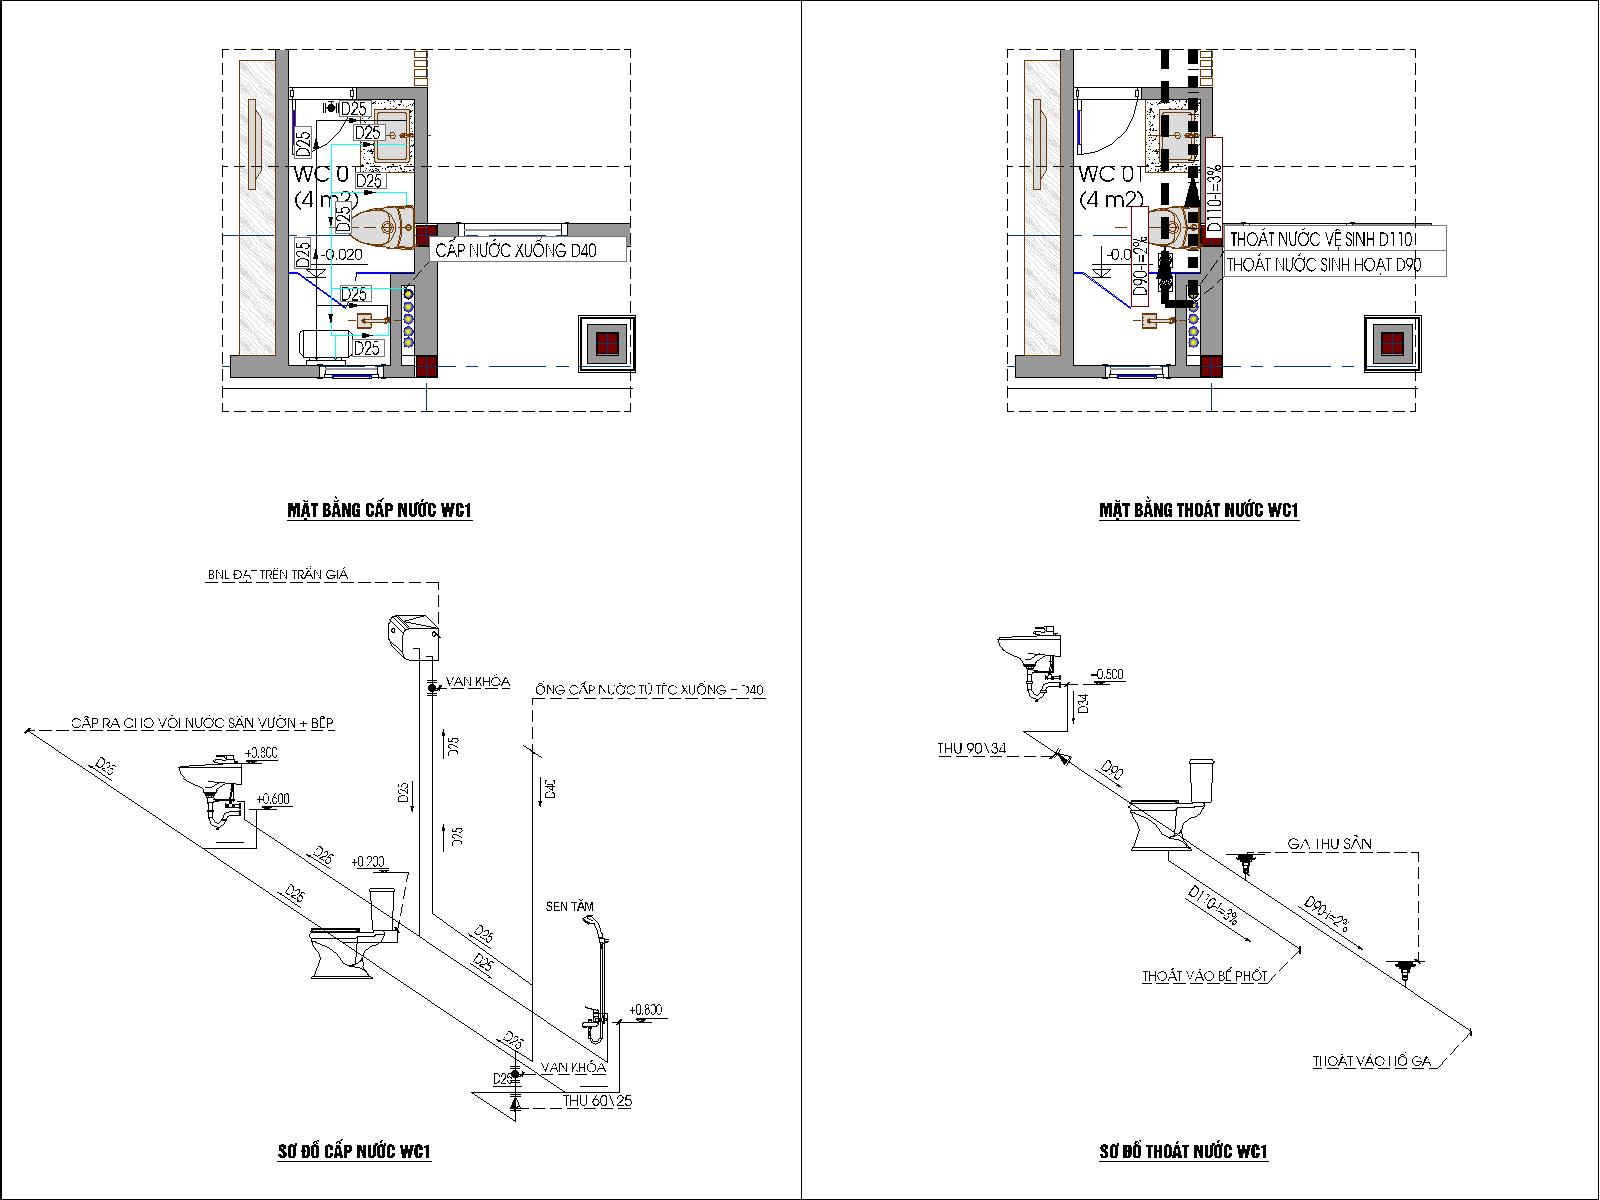 Sơ đồ cấp thoát nước wc1 của bản vẽ điện nước nhà ở dân dụng 2 tầng